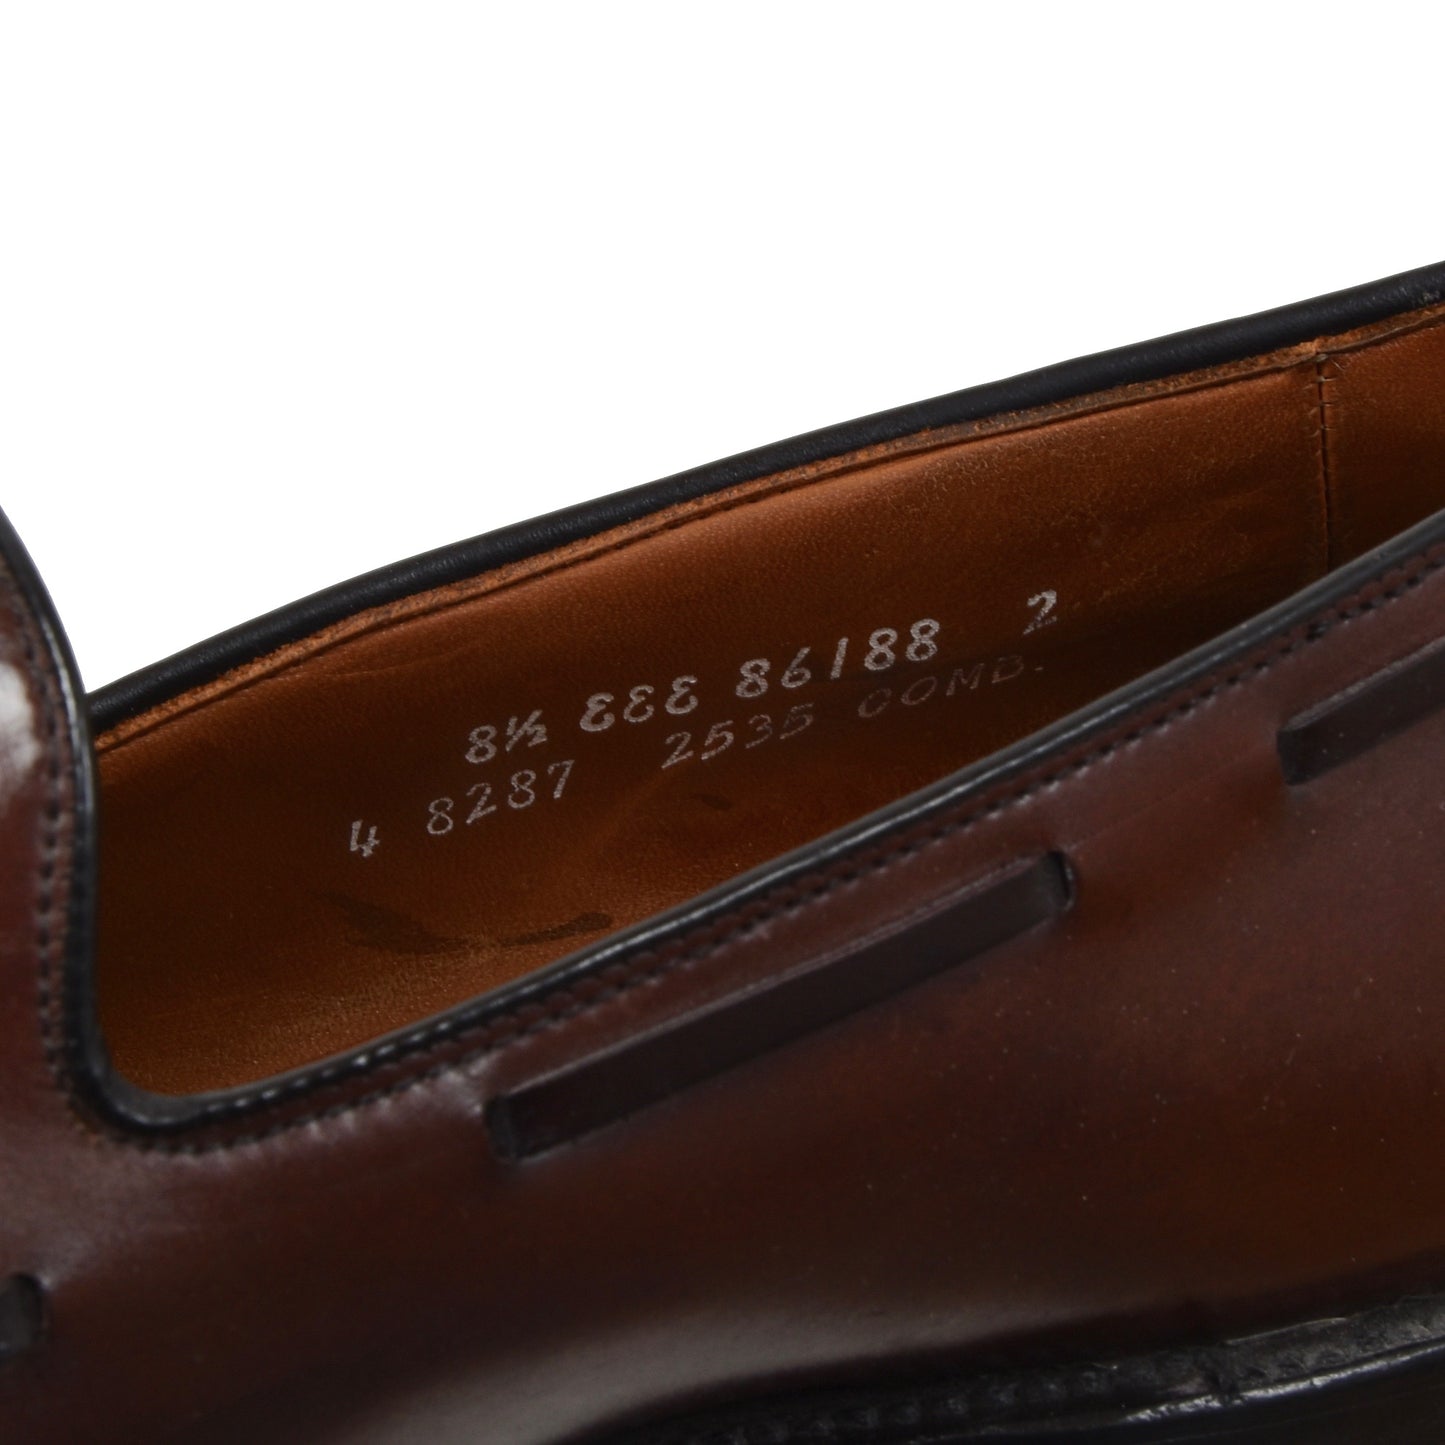 Allen Edmonds Grayson Shell Cordovan Loafer Größe 8.5EEE - Burgund